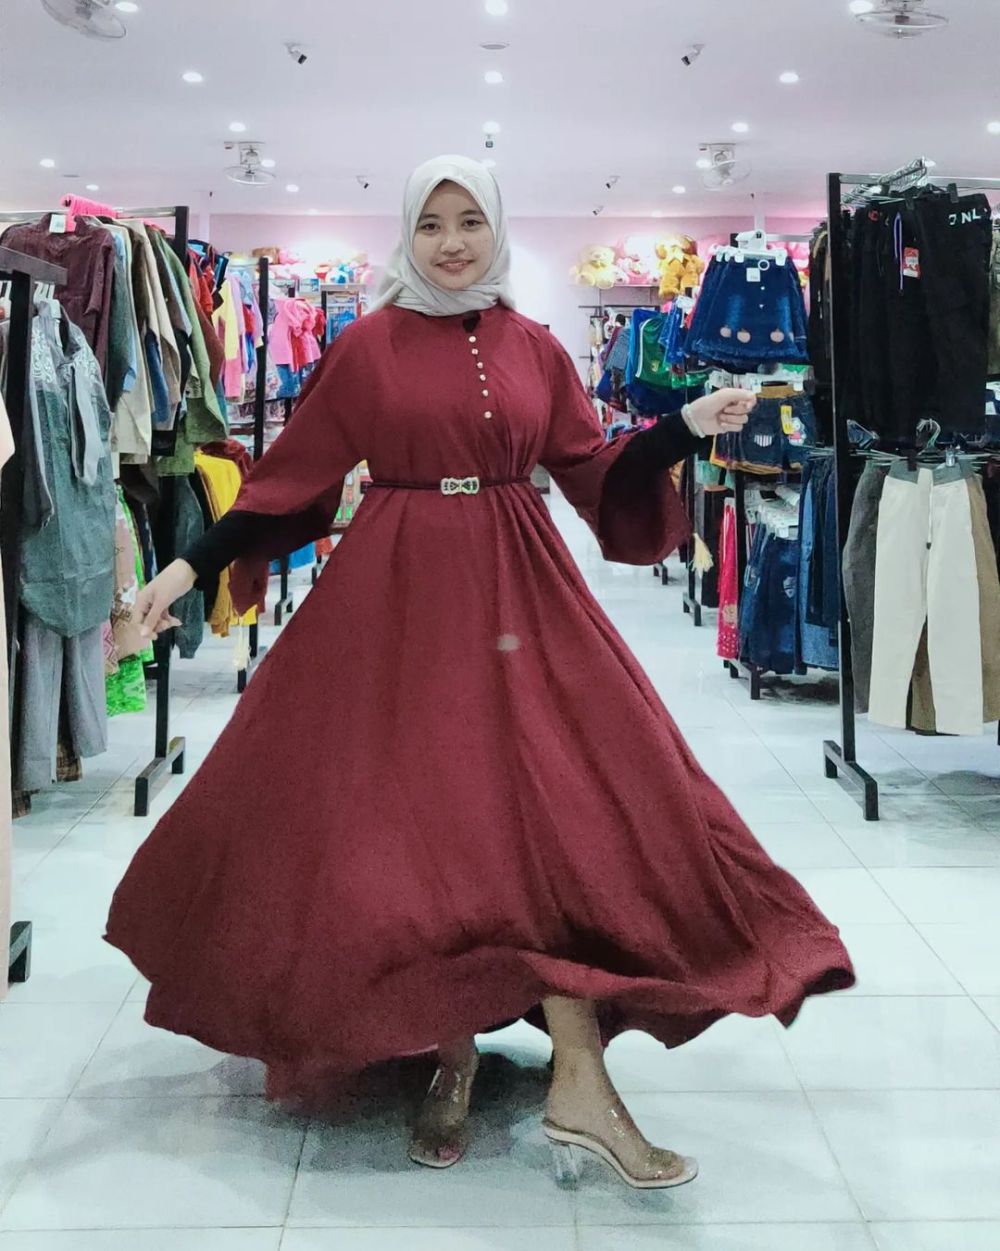 5 Rekomendasi Toko Baju di Jombang, Tawarkan Outfit Kekinian